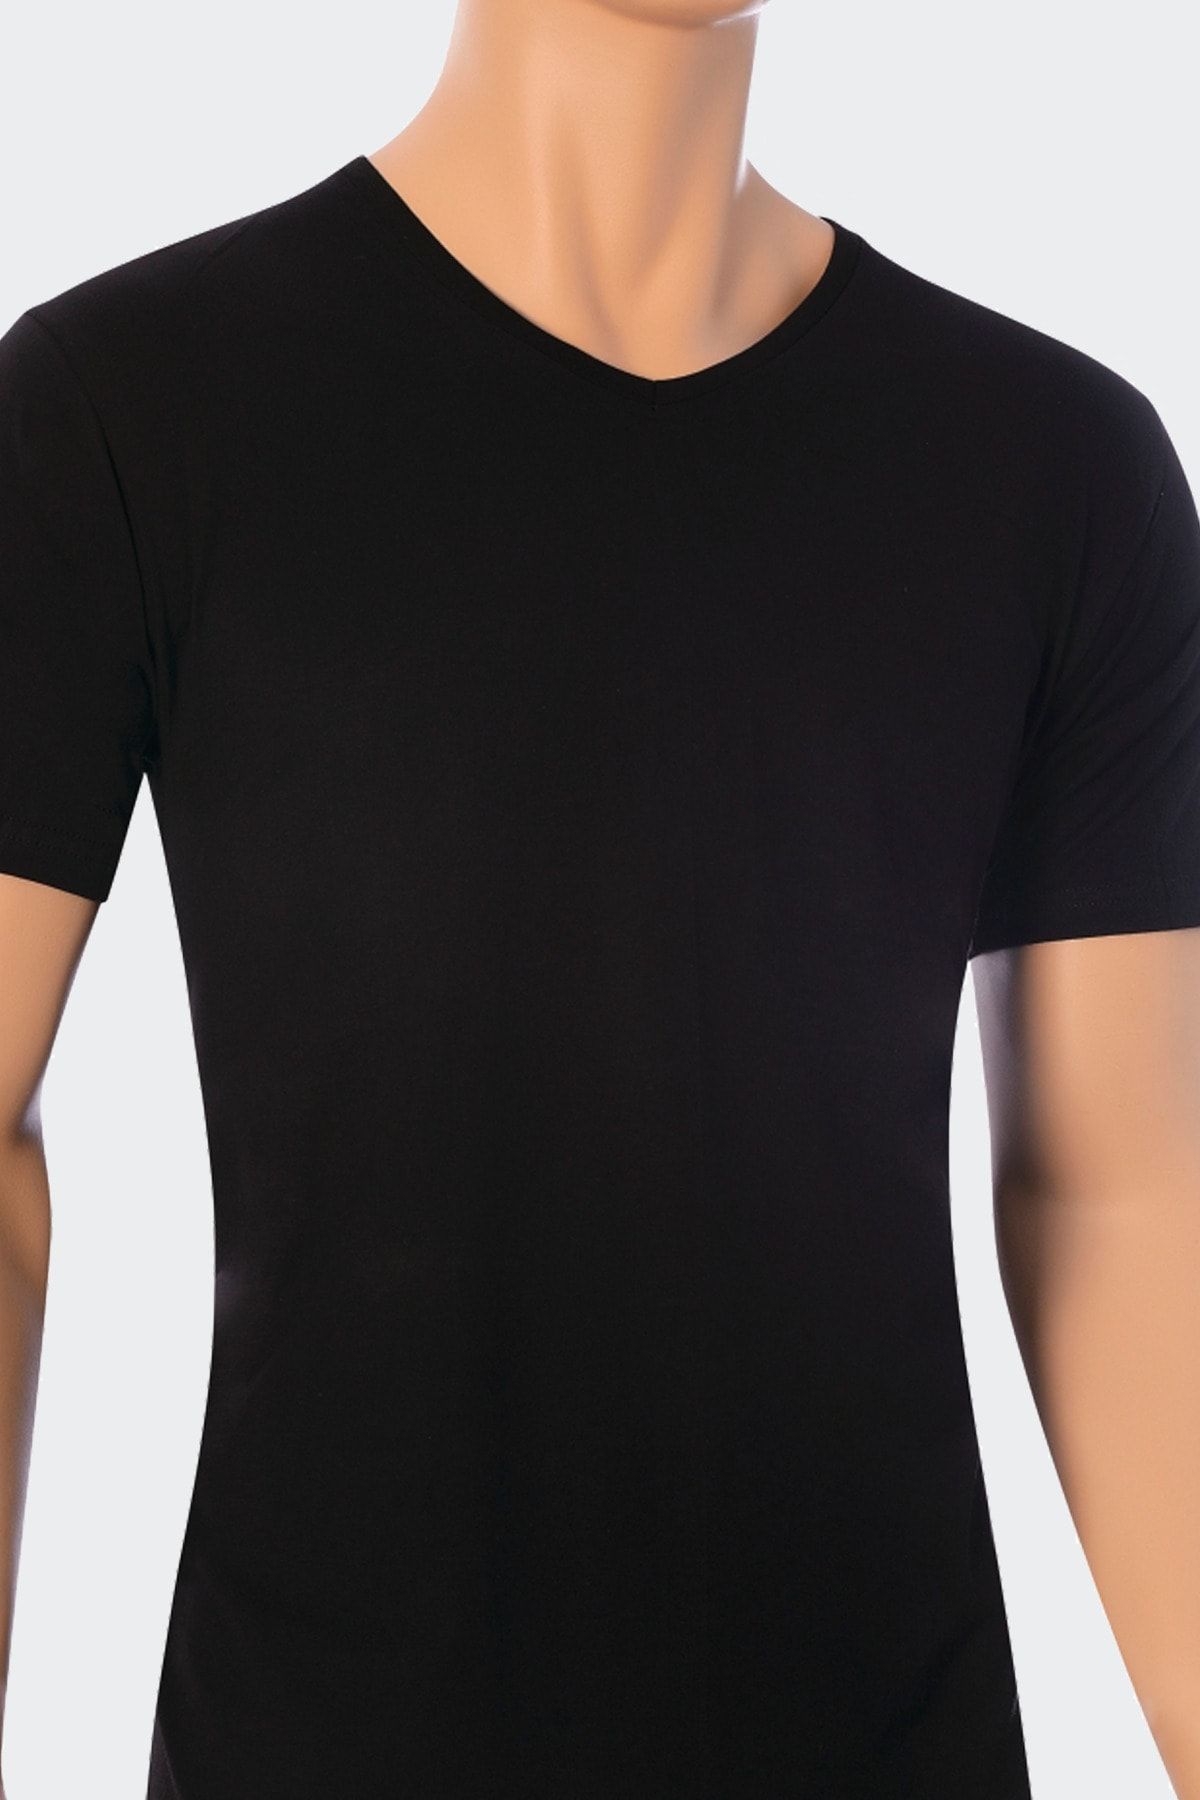 Öts Erkek Siyah Modal V Yaka T-shirt 2'li